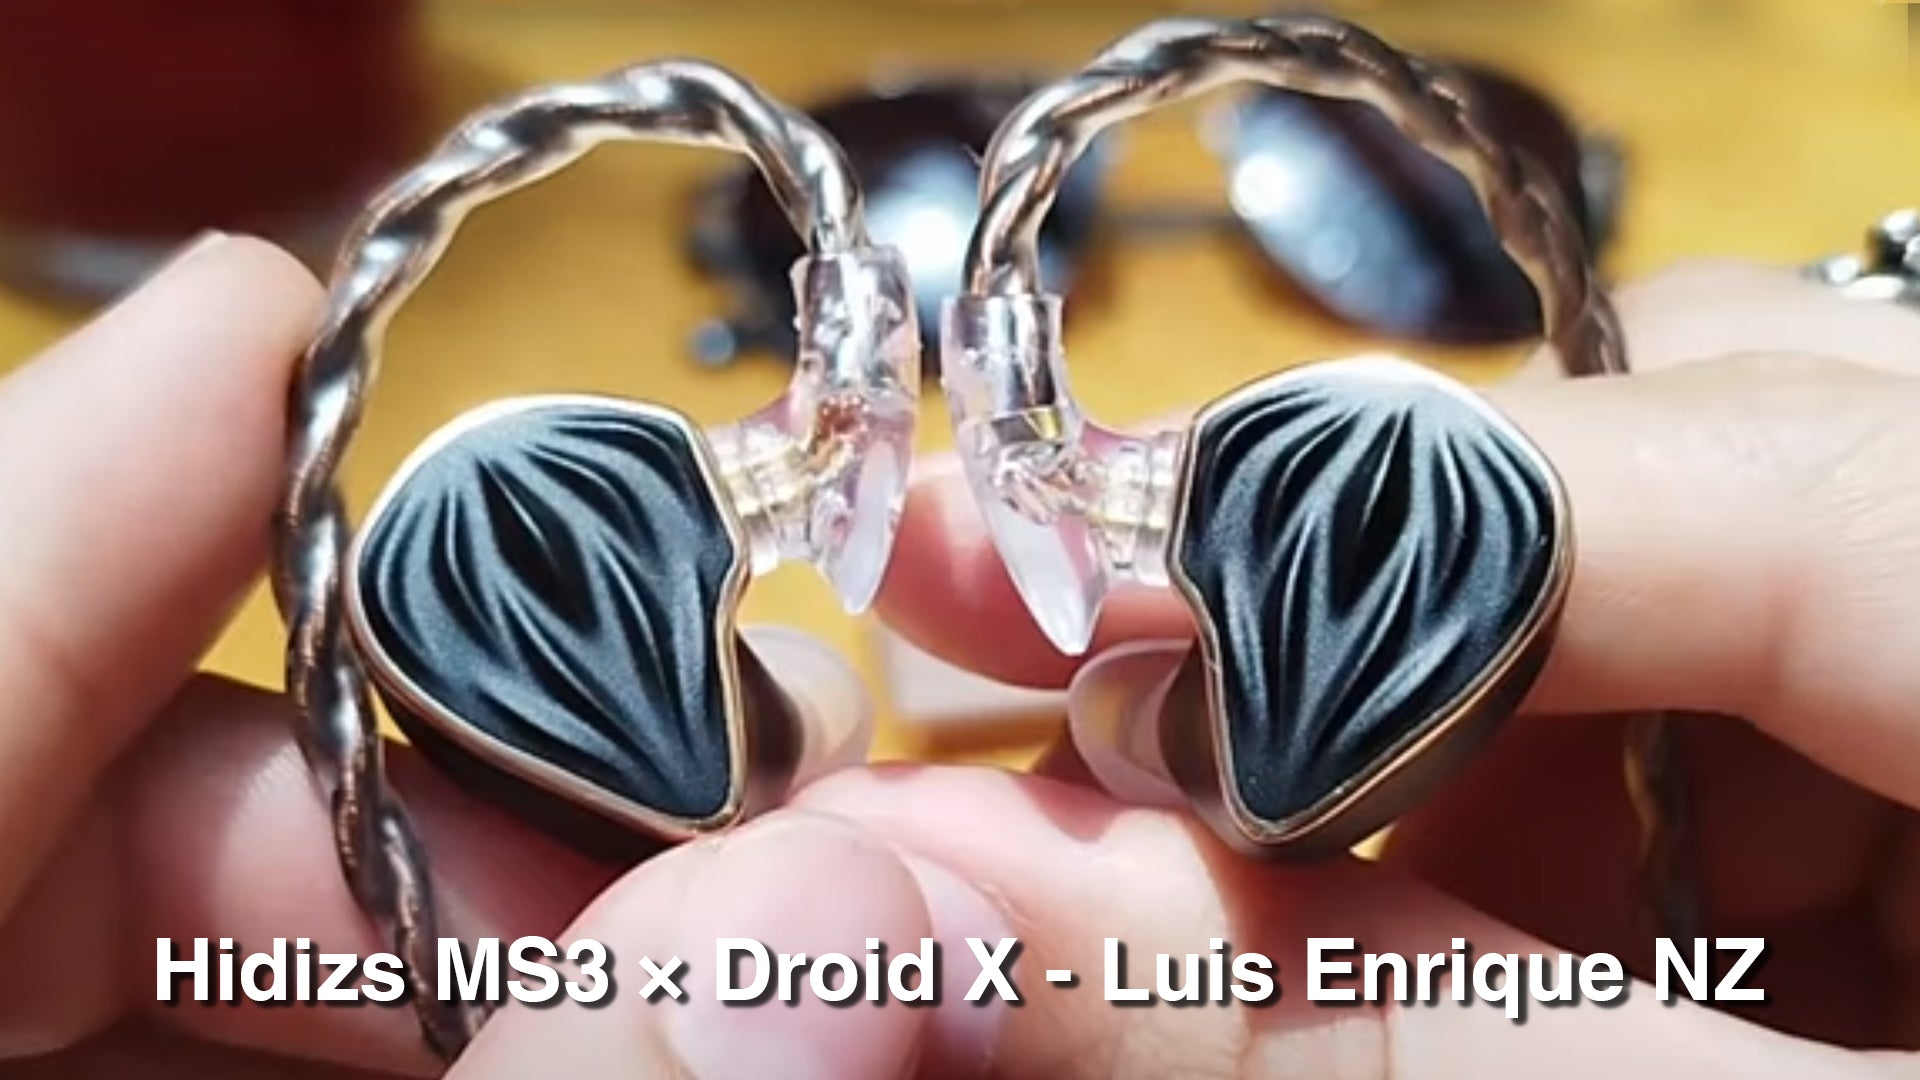 Hidizs MS3 Review - Droid X - Luis Enrique NZ